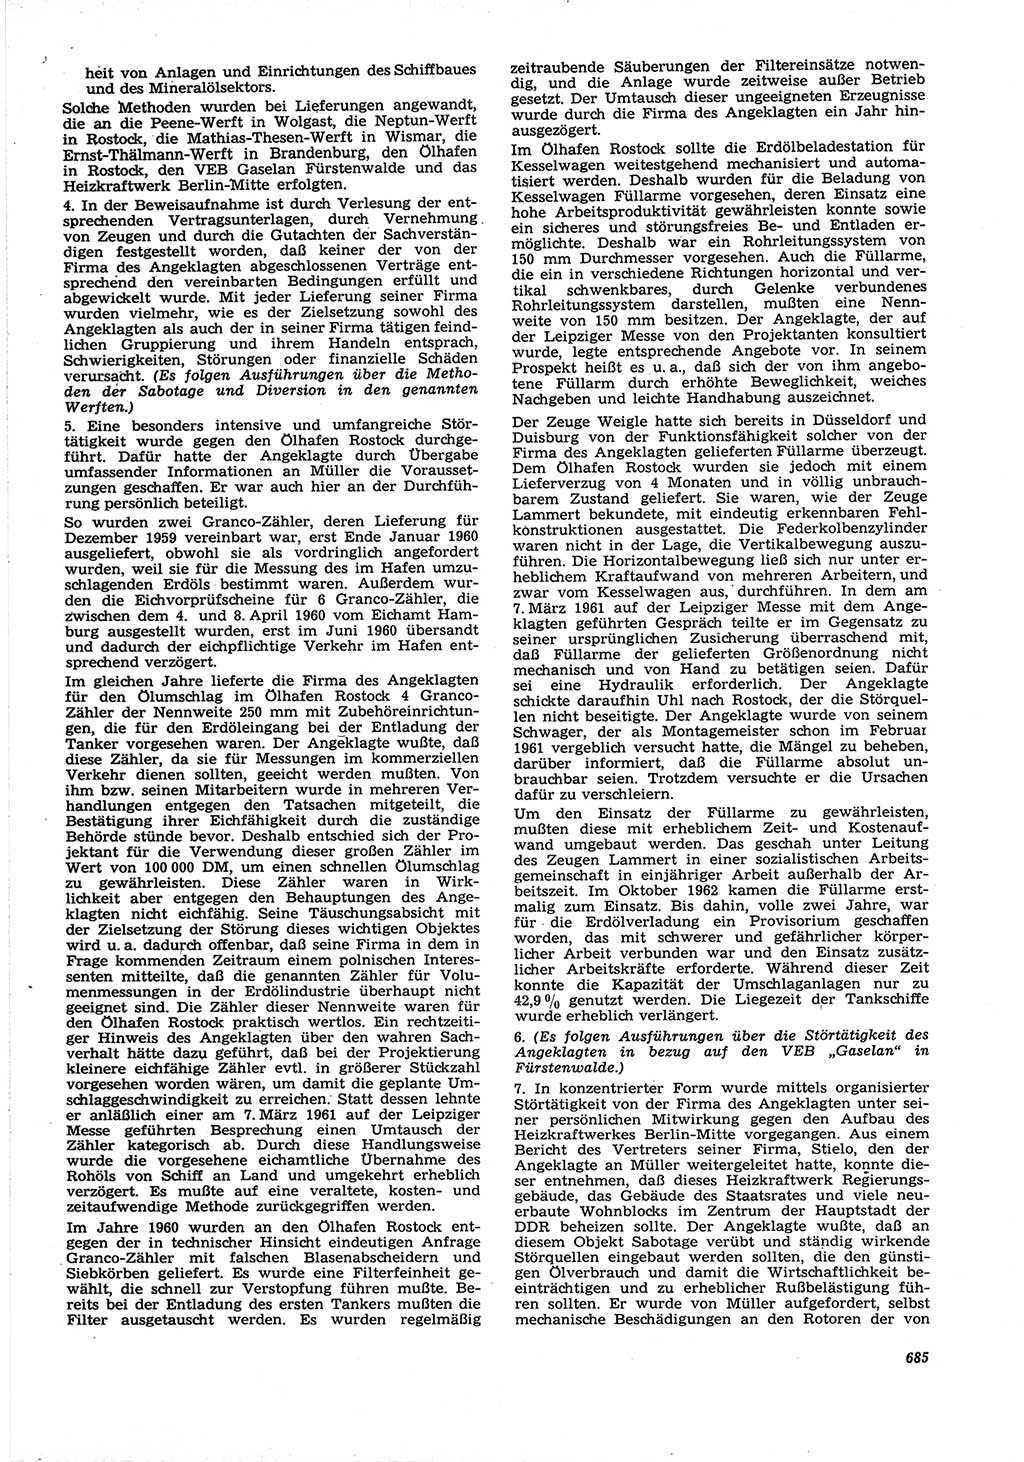 Neue Justiz (NJ), Zeitschrift für Recht und Rechtswissenschaft [Deutsche Demokratische Republik (DDR)], 21. Jahrgang 1967, Seite 685 (NJ DDR 1967, S. 685)